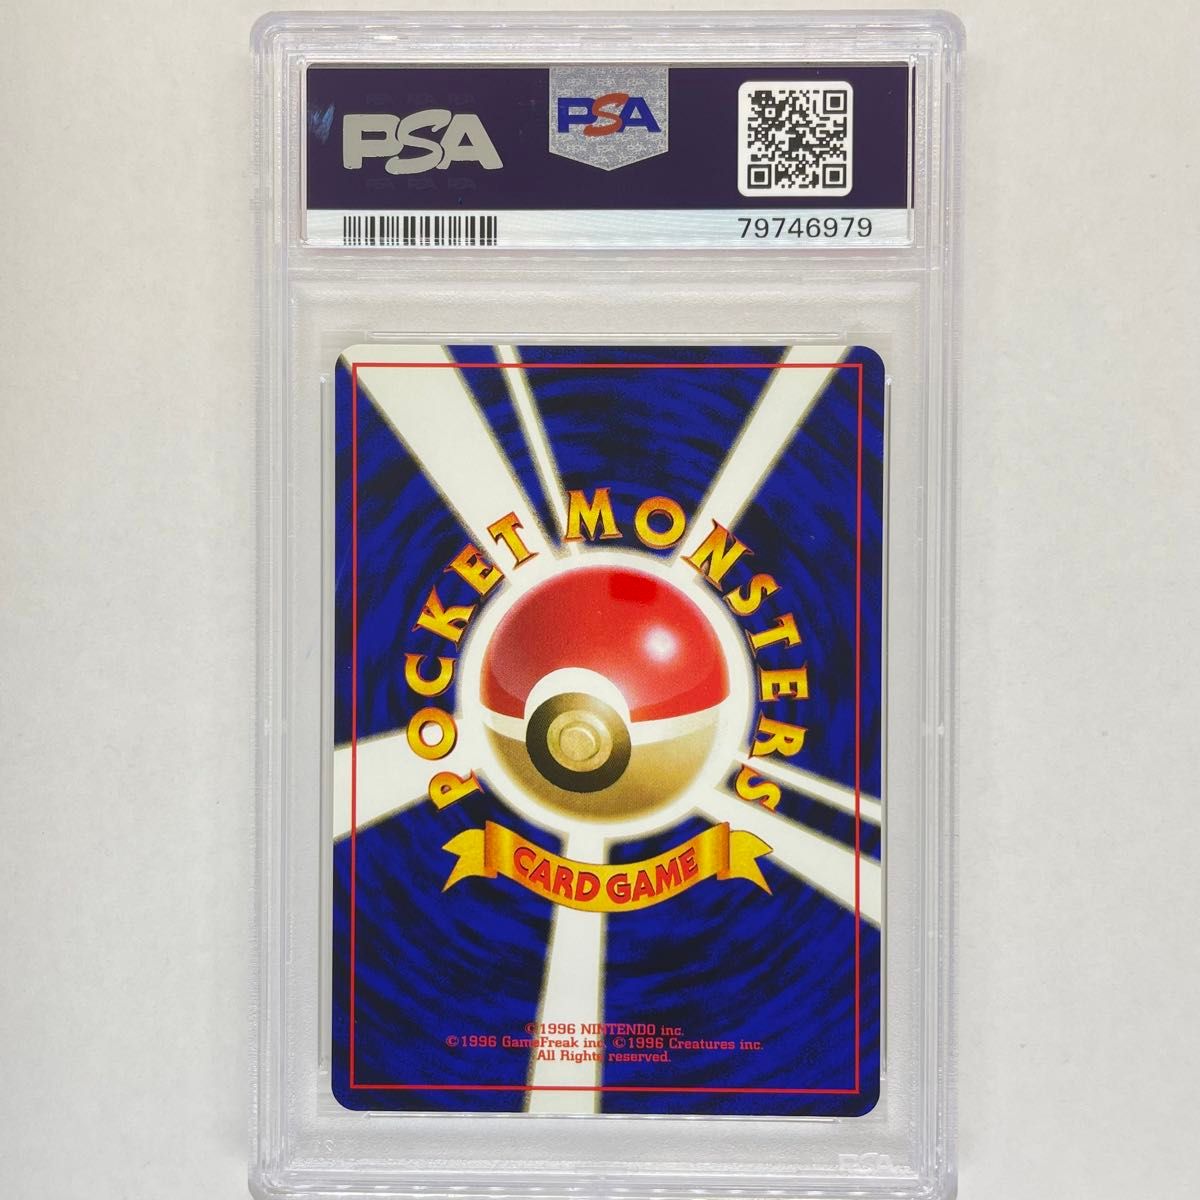 ビードル 旧裏 PSA10 ポケモンカード 旧裏面 鑑定品 1996 pokemon card Japanese